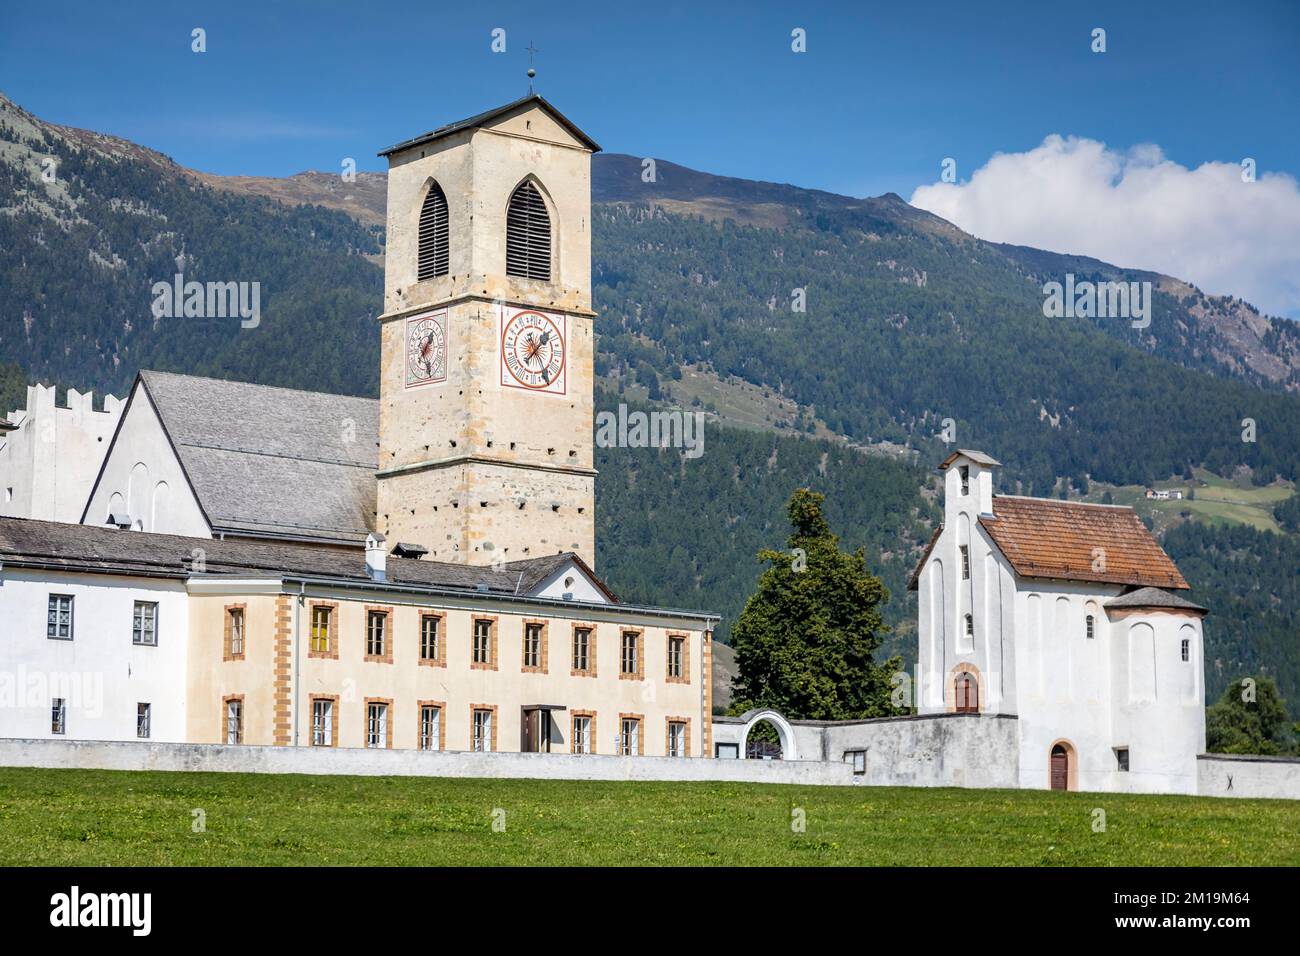 Paysage idyllique du village de Val Mustair, Engadine, Alpes suisses, Suisse Banque D'Images